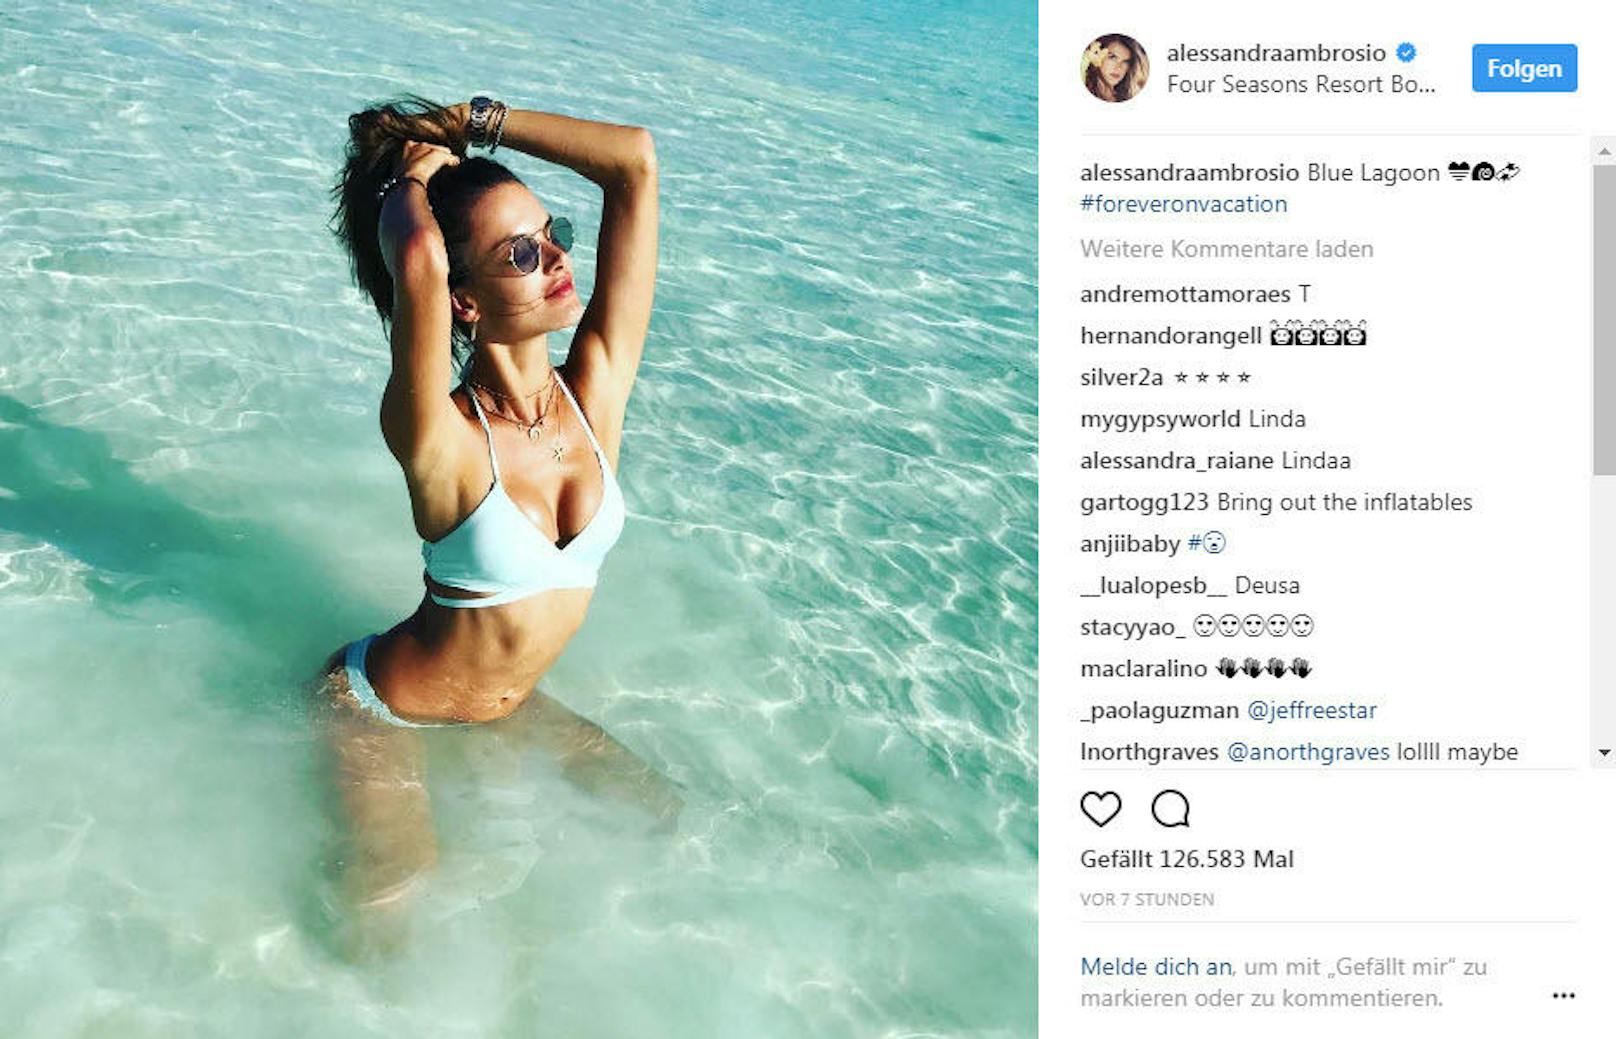 19.08.2017: Alessandra Ambrosio sonnt sich in der "Blauen Lagune"